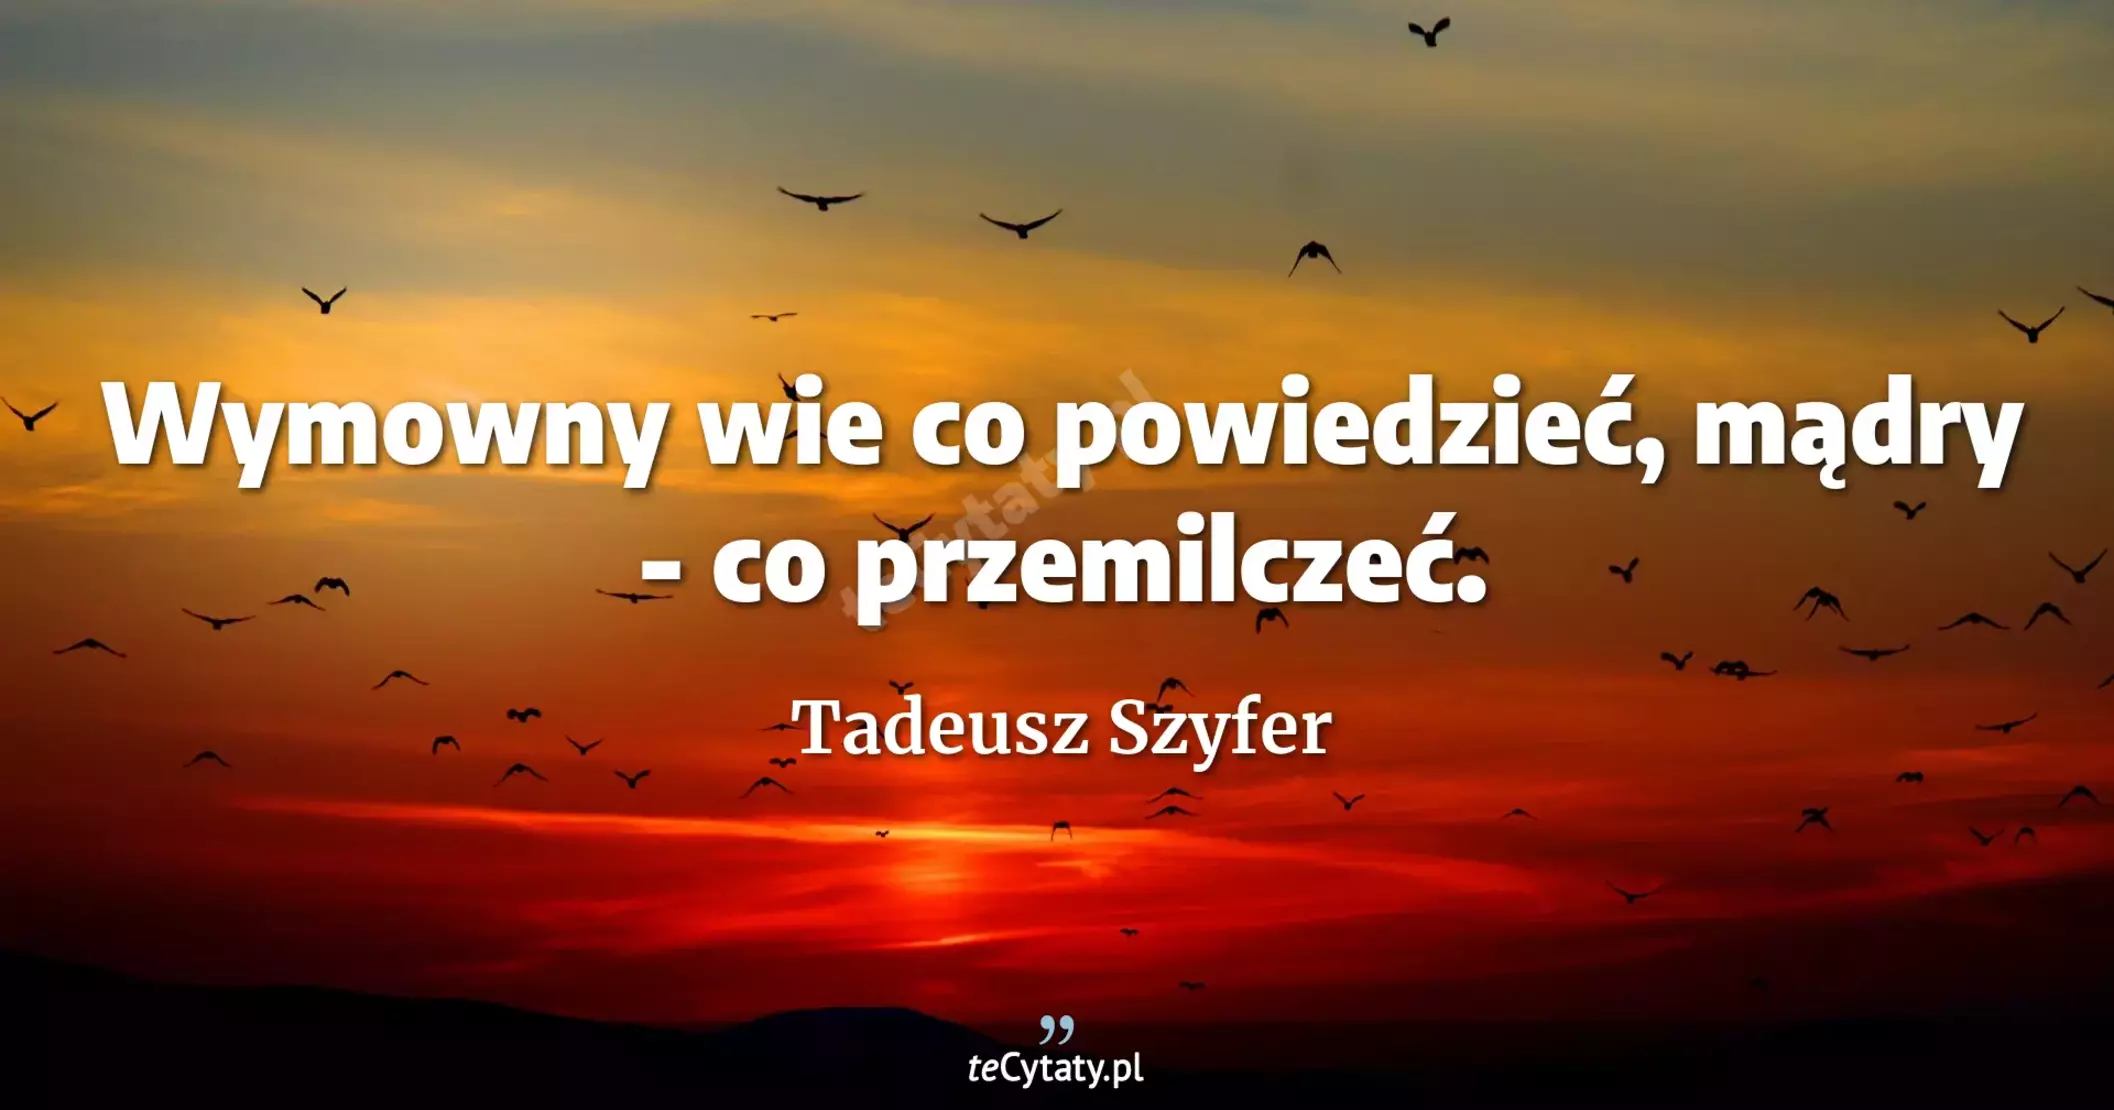 Wymowny wie co powiedzieć, mądry - co przemilczeć. - Tadeusz Szyfer